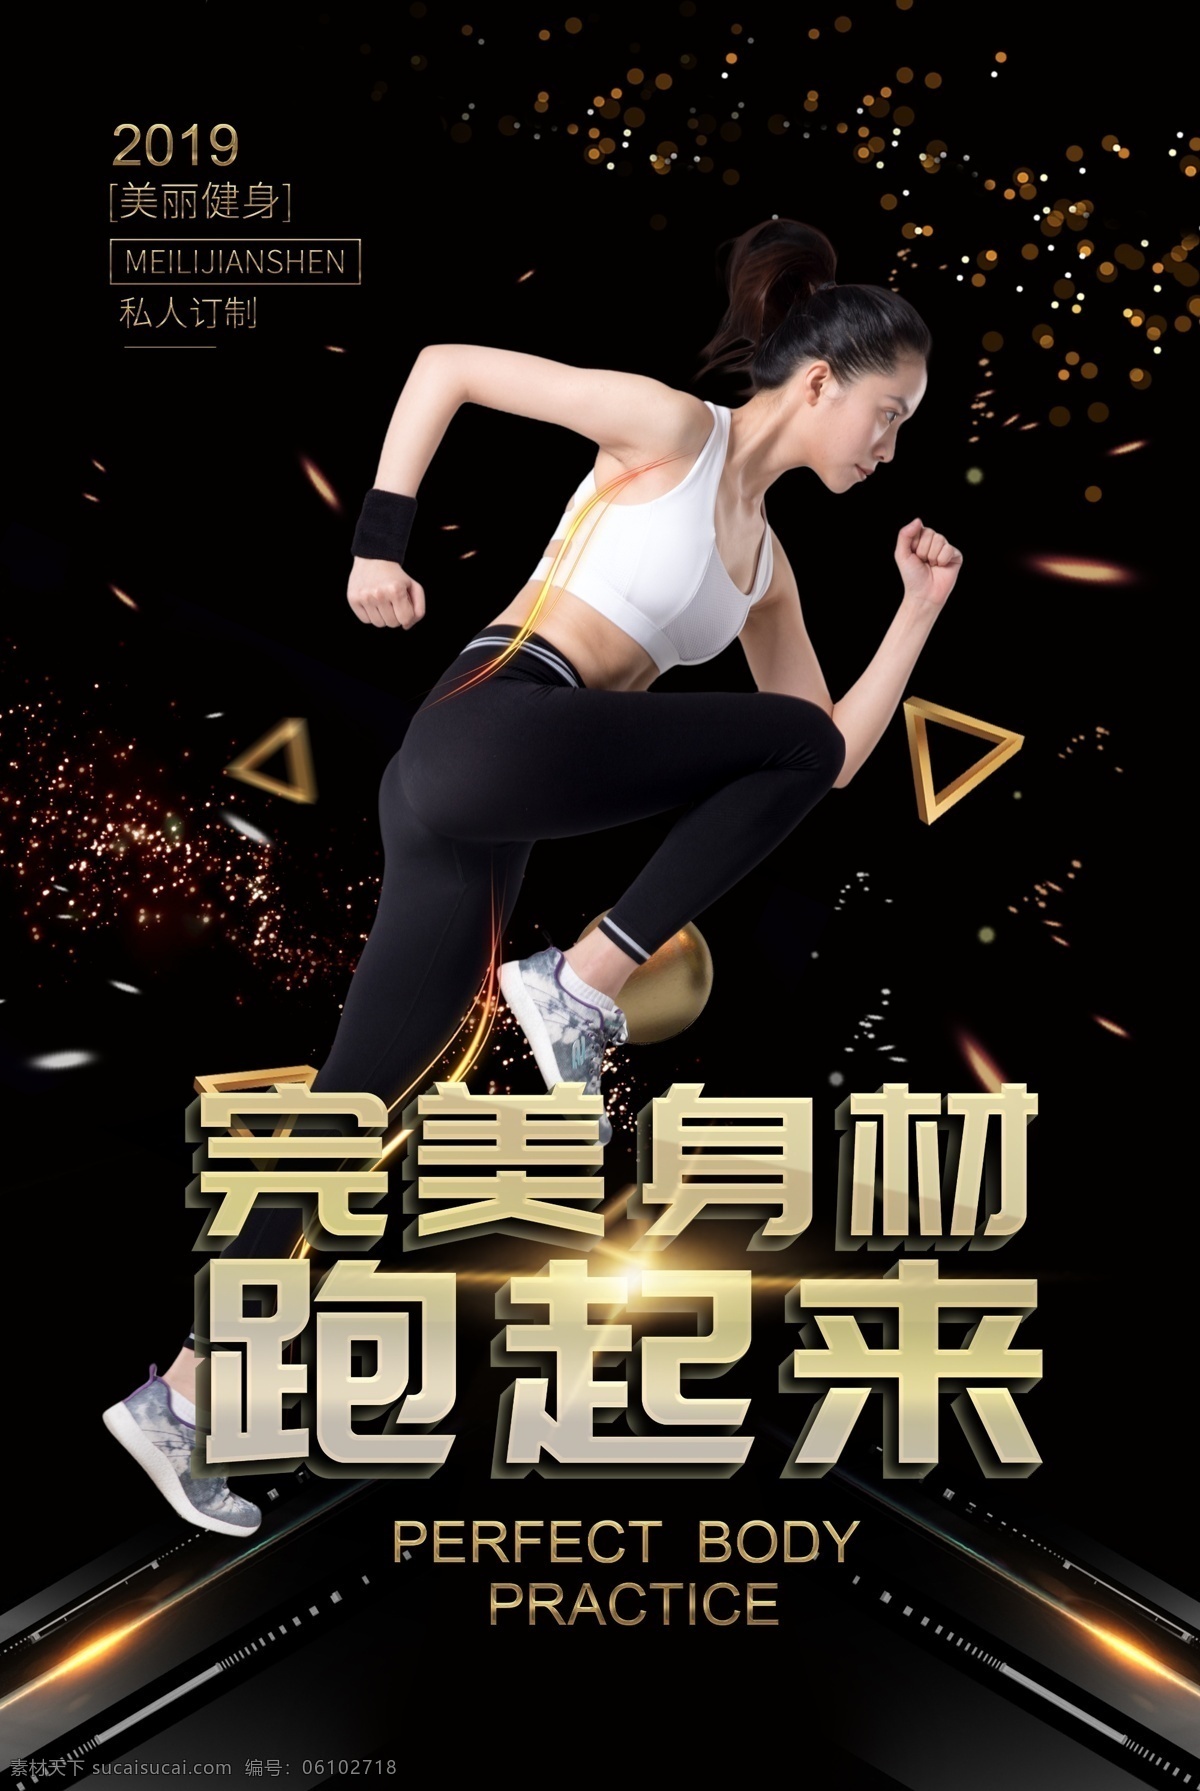 大气 科技 高级 感 完美 身材 跑 起来 运动 健身 海报 完美身材 跑起来 美丽 私人 订制 2019 健身房海报 健身房 宣传海报